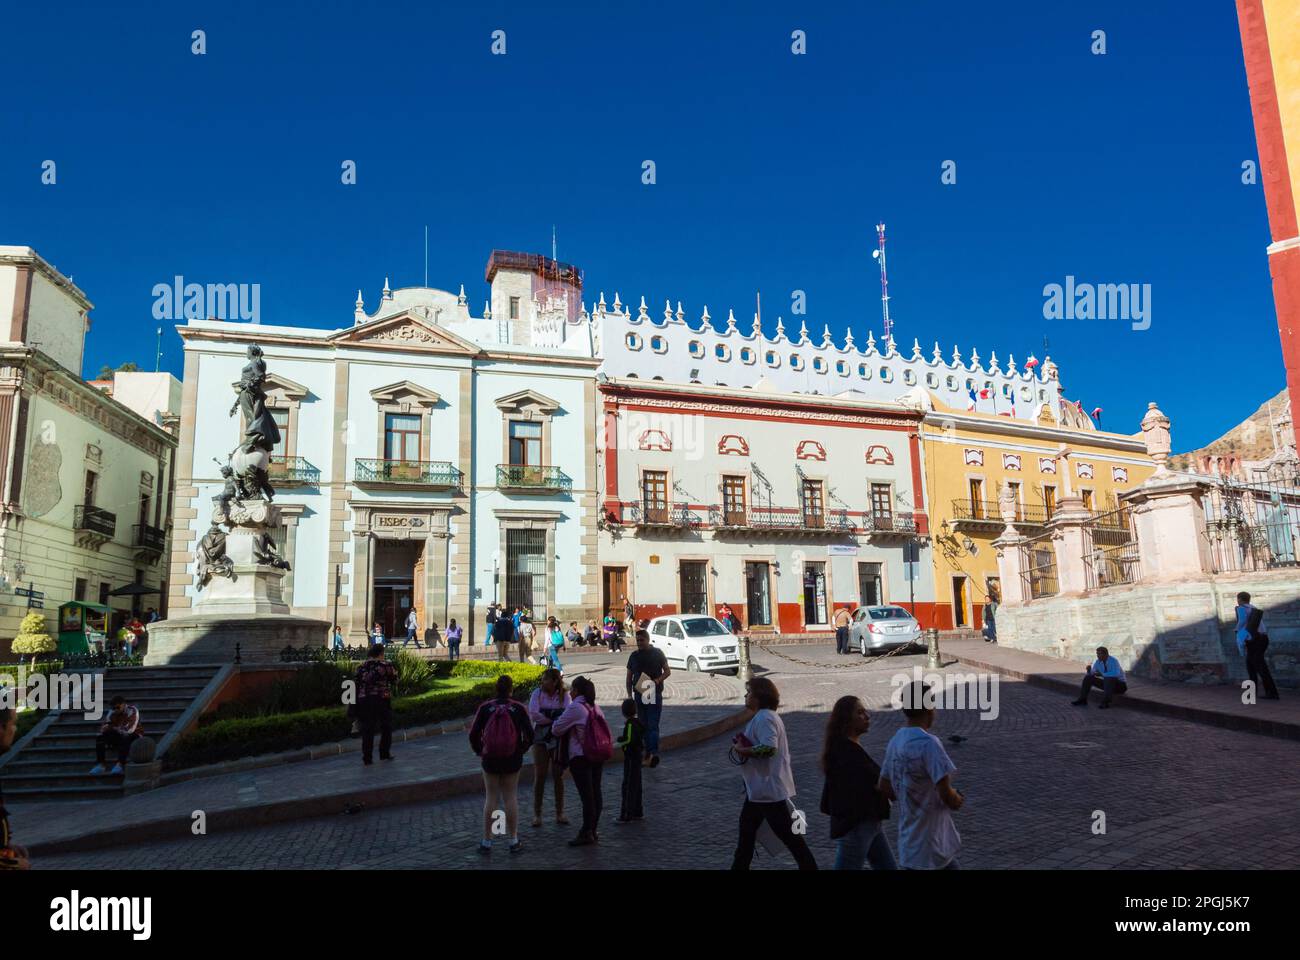 Guanajuato, Guanajuato, Messico, Plaza de la paz con l'architettura colorata che è il centro della città storica di Guanajuato Foto Stock